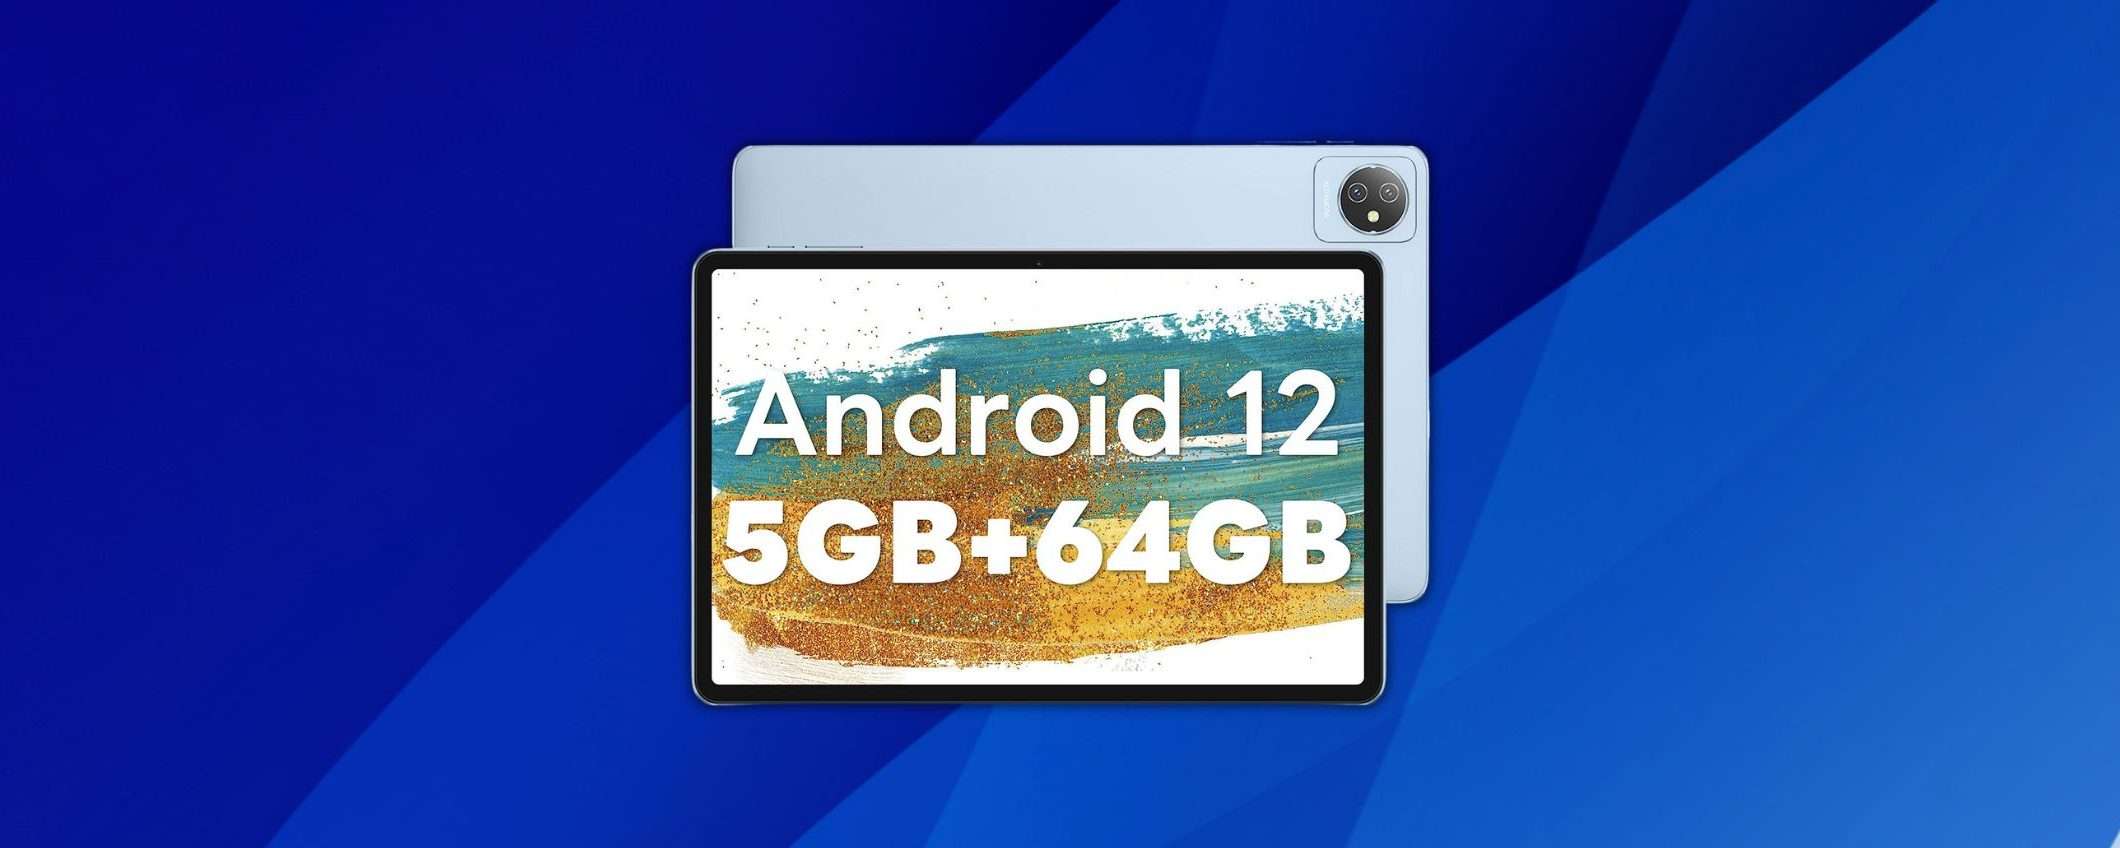 Tablet Android 12 da 10 pollici con 5GB di RAM: solo 84 euro su